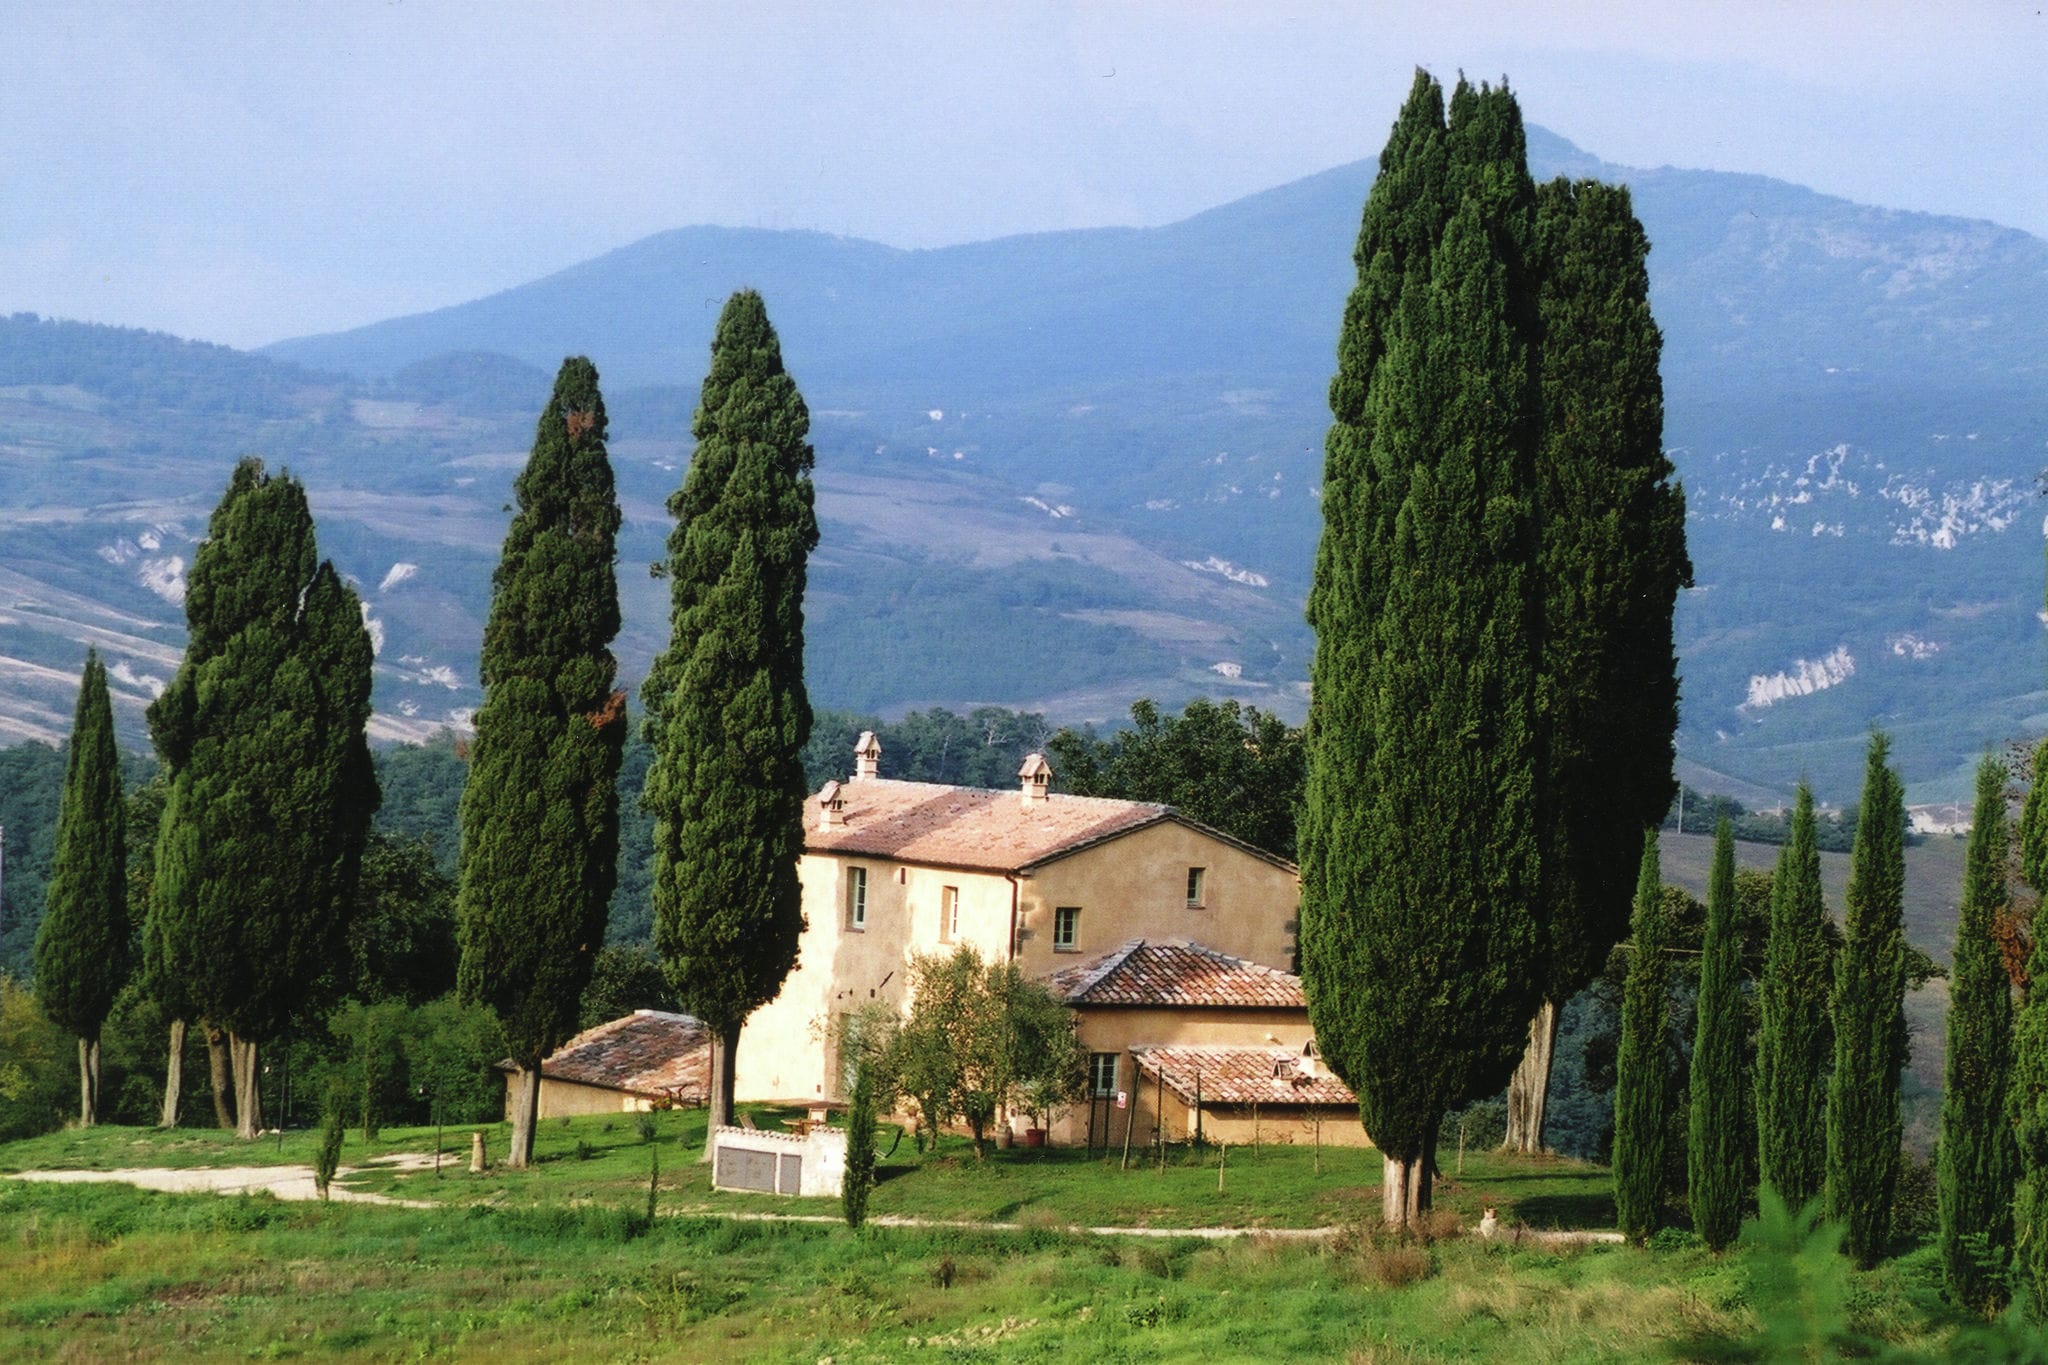 Belle maison de vacances près des sources chaudes de Toscane